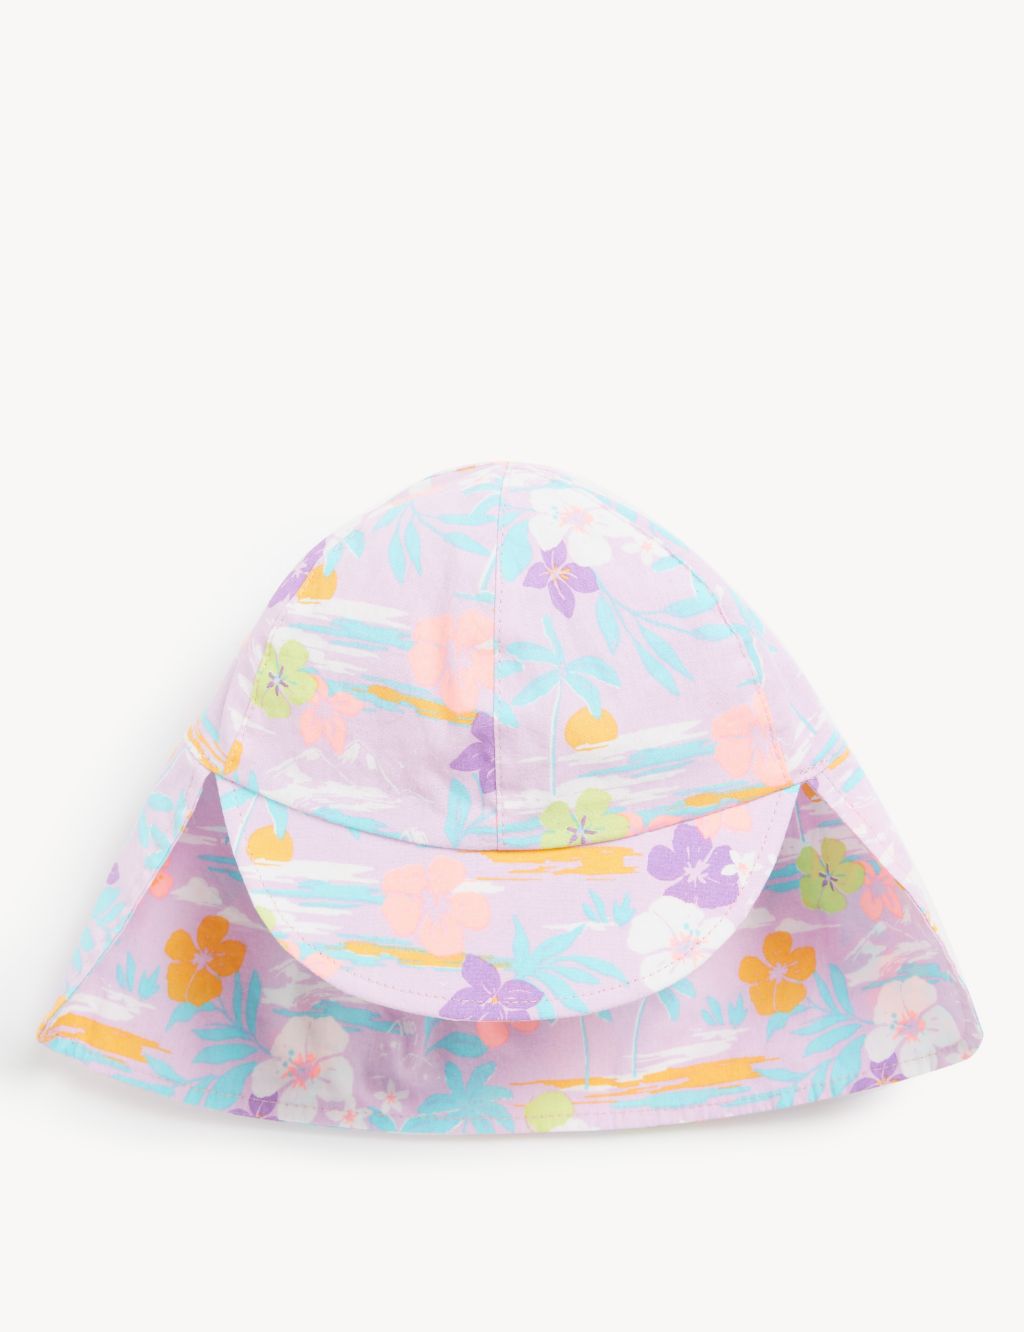 Kids' Pure Cotton Floral Sun Hat (0-6 Yrs) image 1